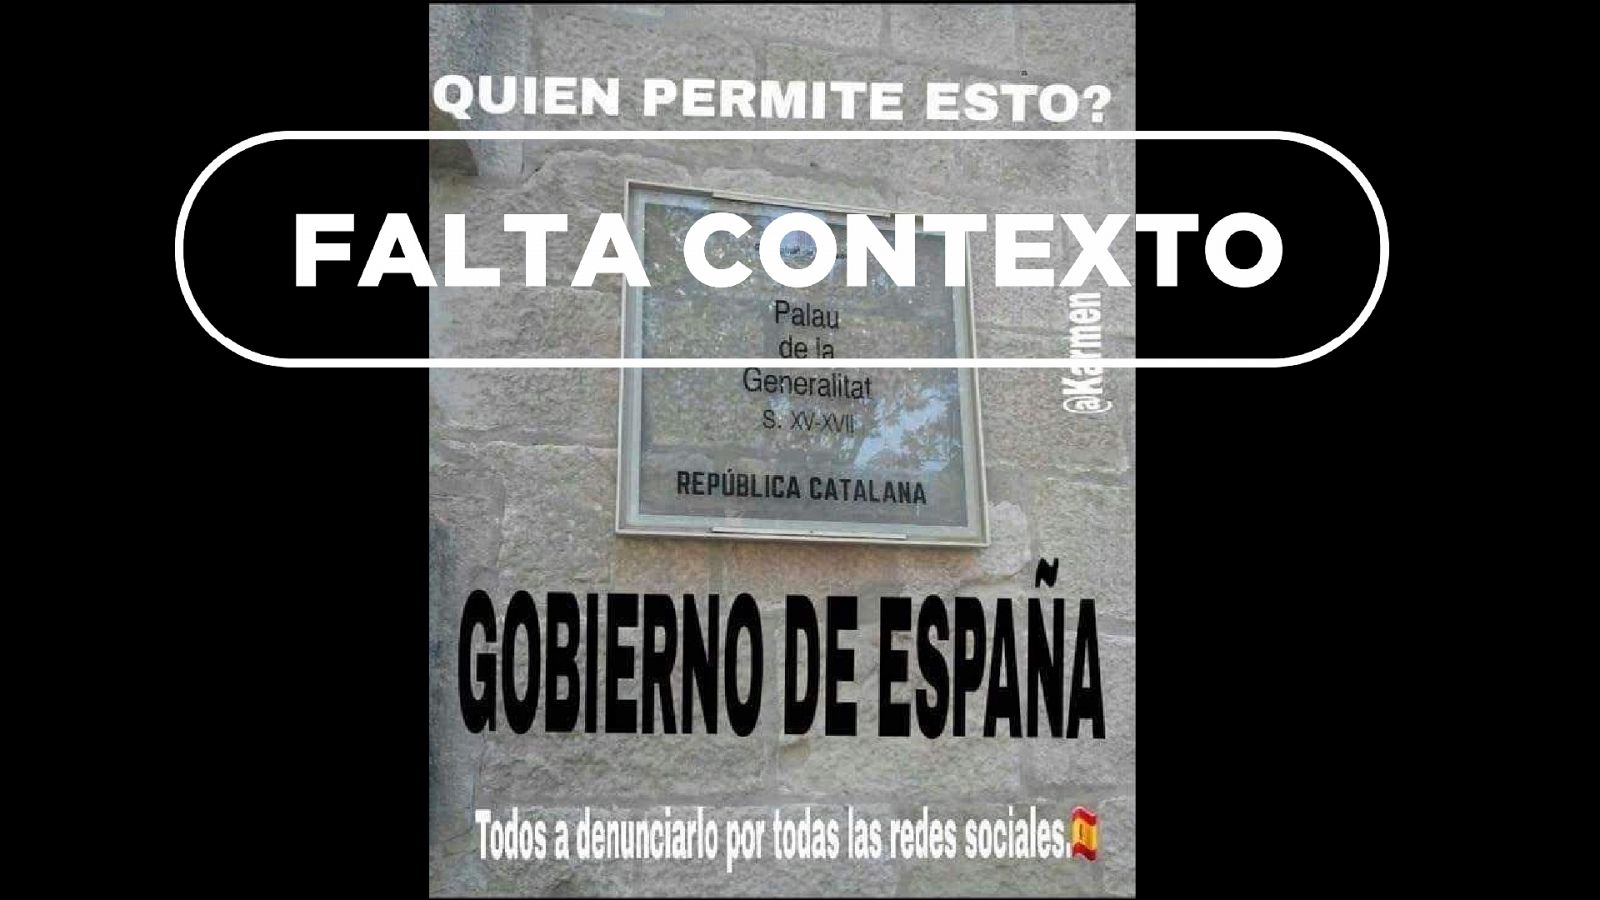 Cartel trucado del Palau de la Generalitat con el adhesivo de "República Catalana"